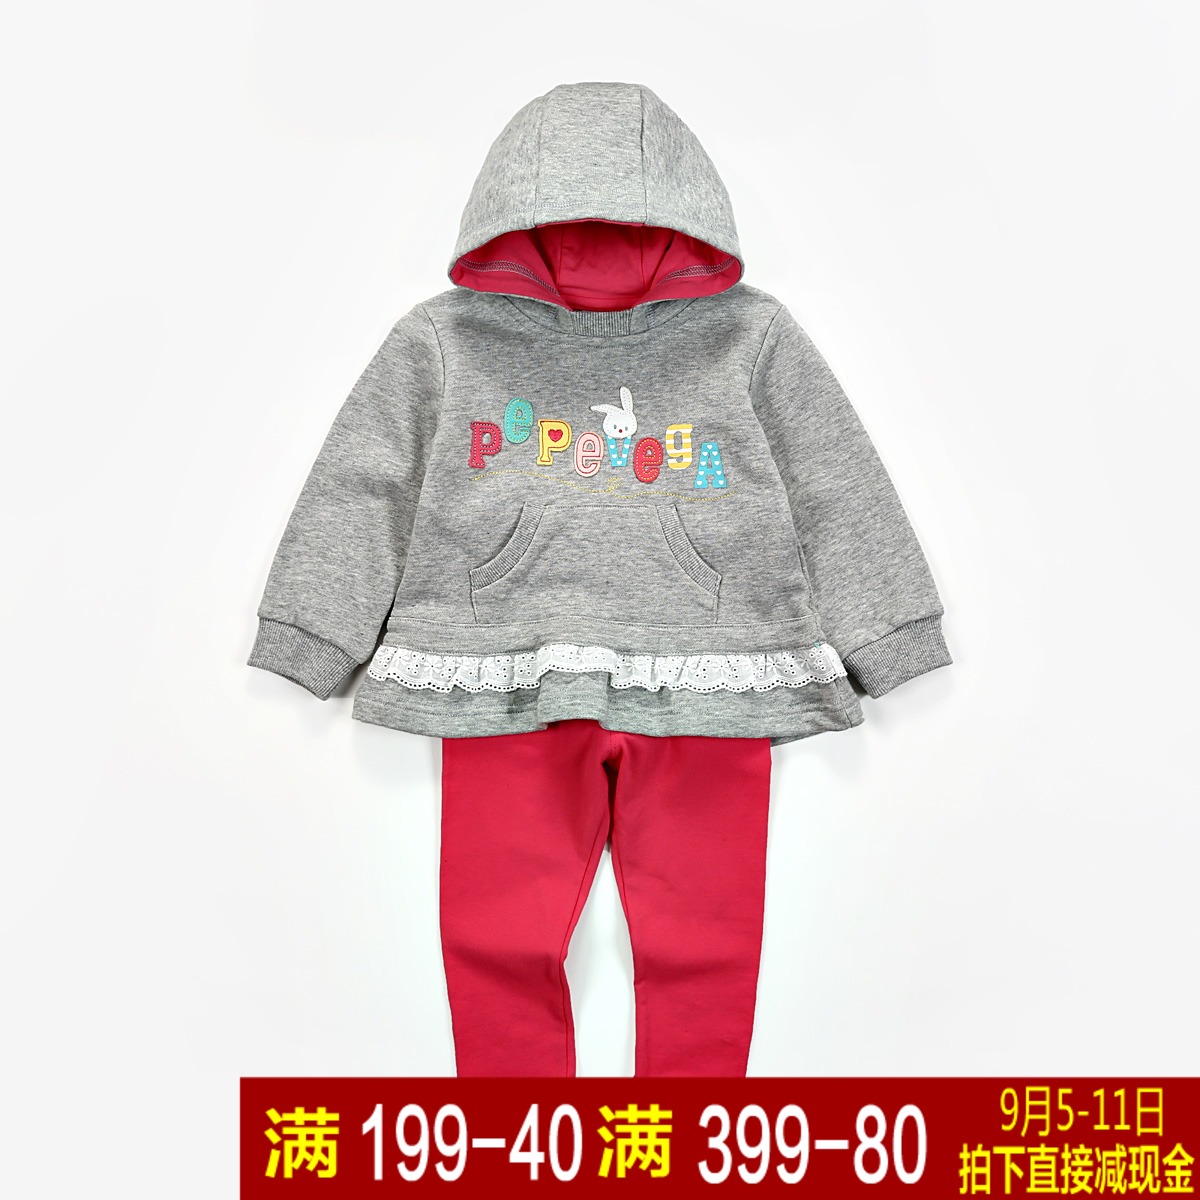 贝贝王国品牌2015春季新婴幼童纯棉运动套装女宝宝可爱两件套薄款